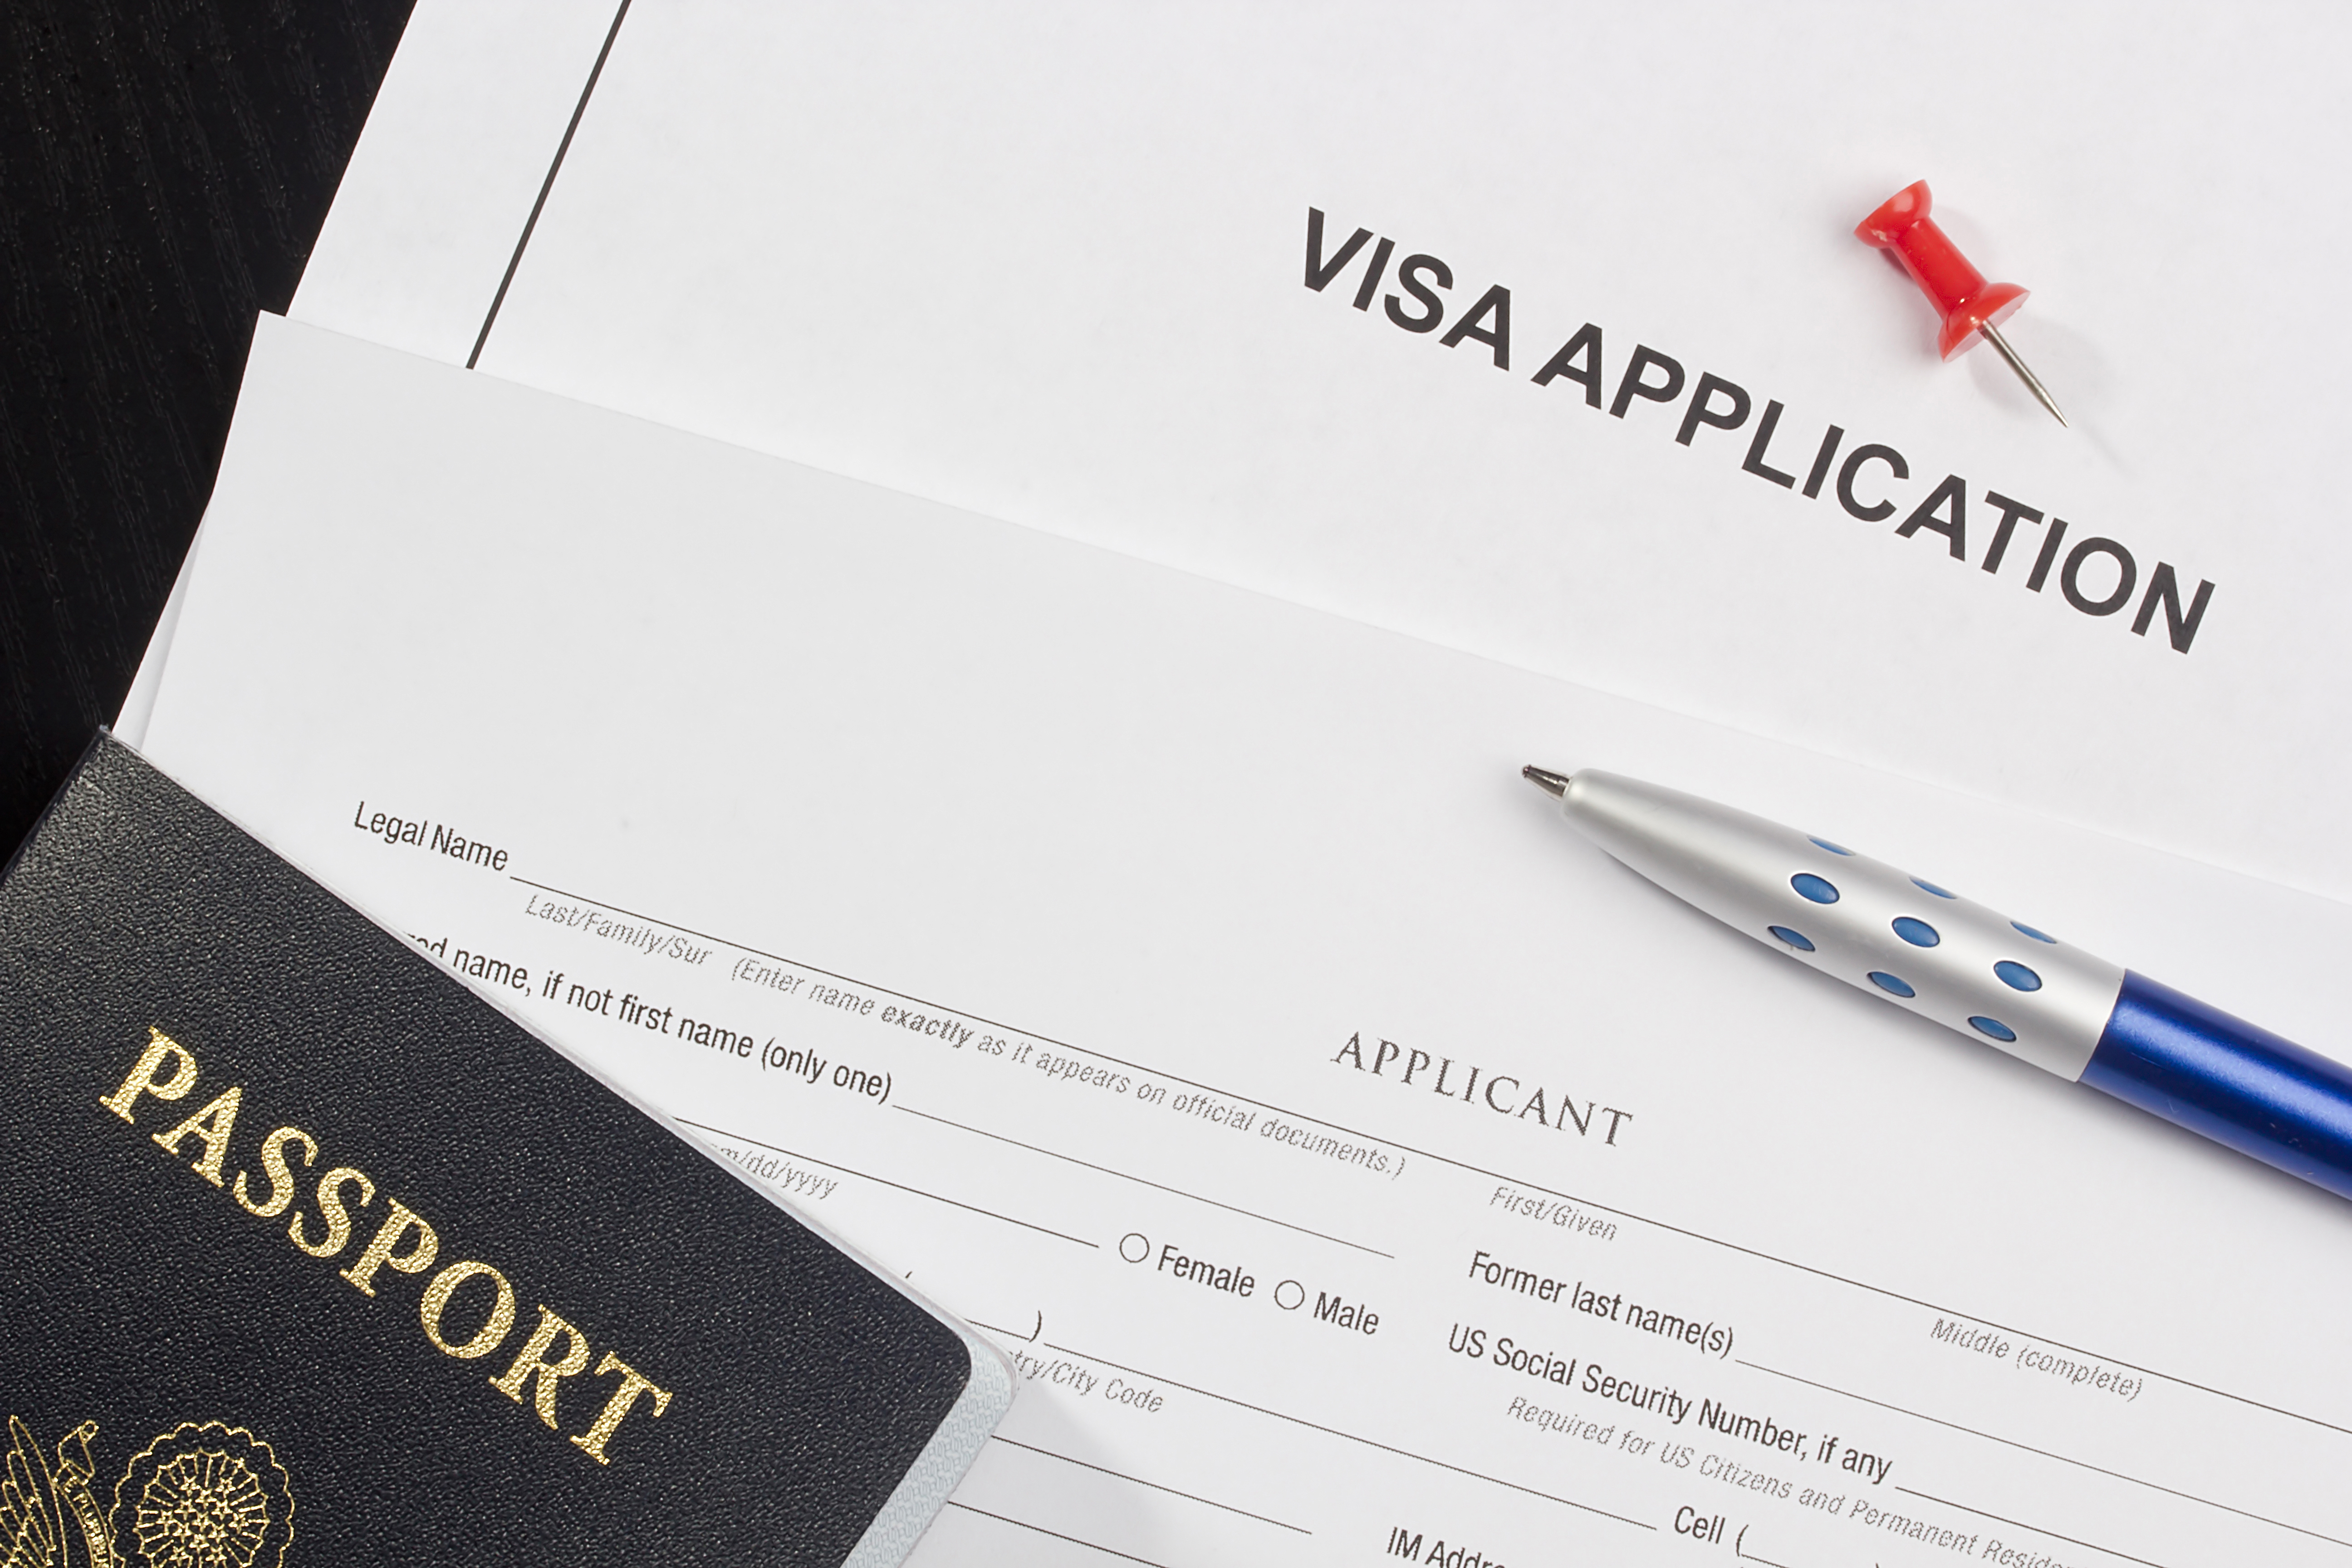 Americanii susțin eliminarea vizelor pentru românii care călătoresc în SUA. Sursa foto: depositphotos.com